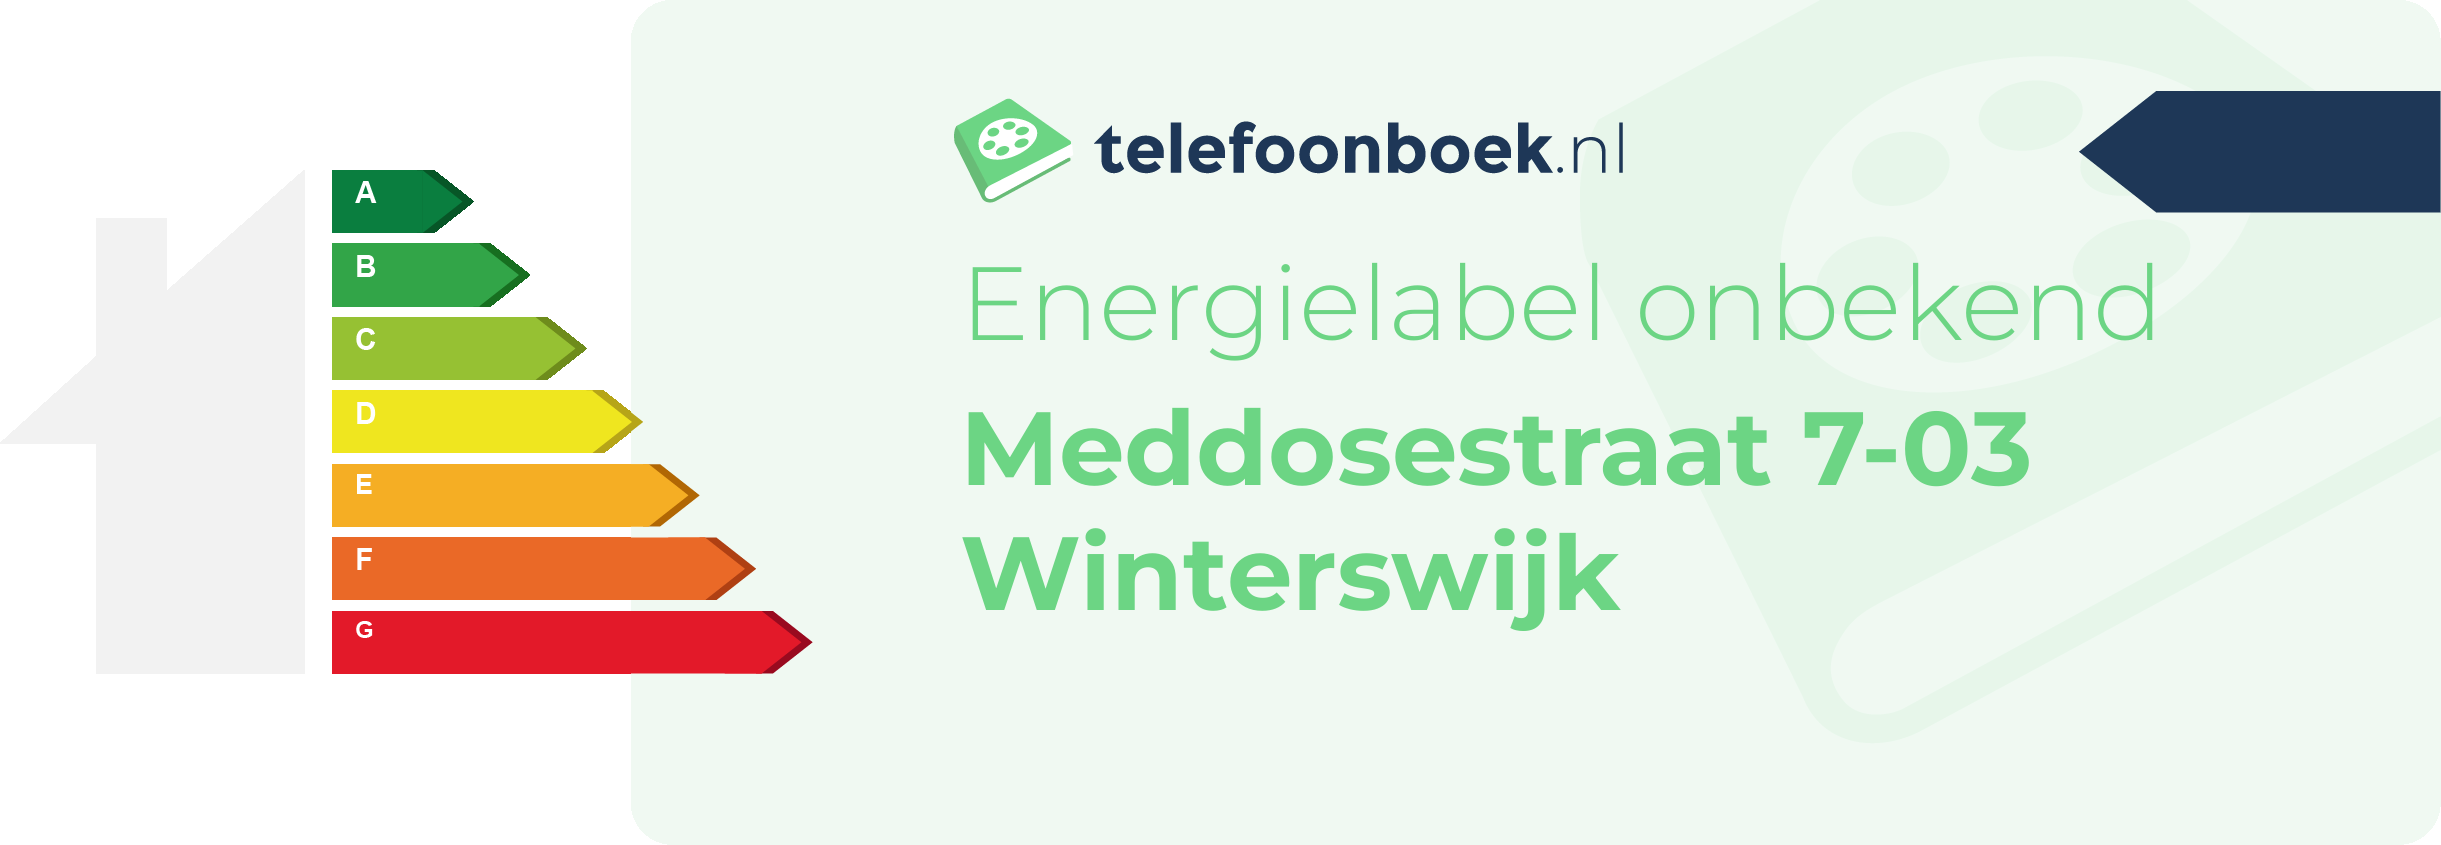 Energielabel Meddosestraat 7-03 Winterswijk